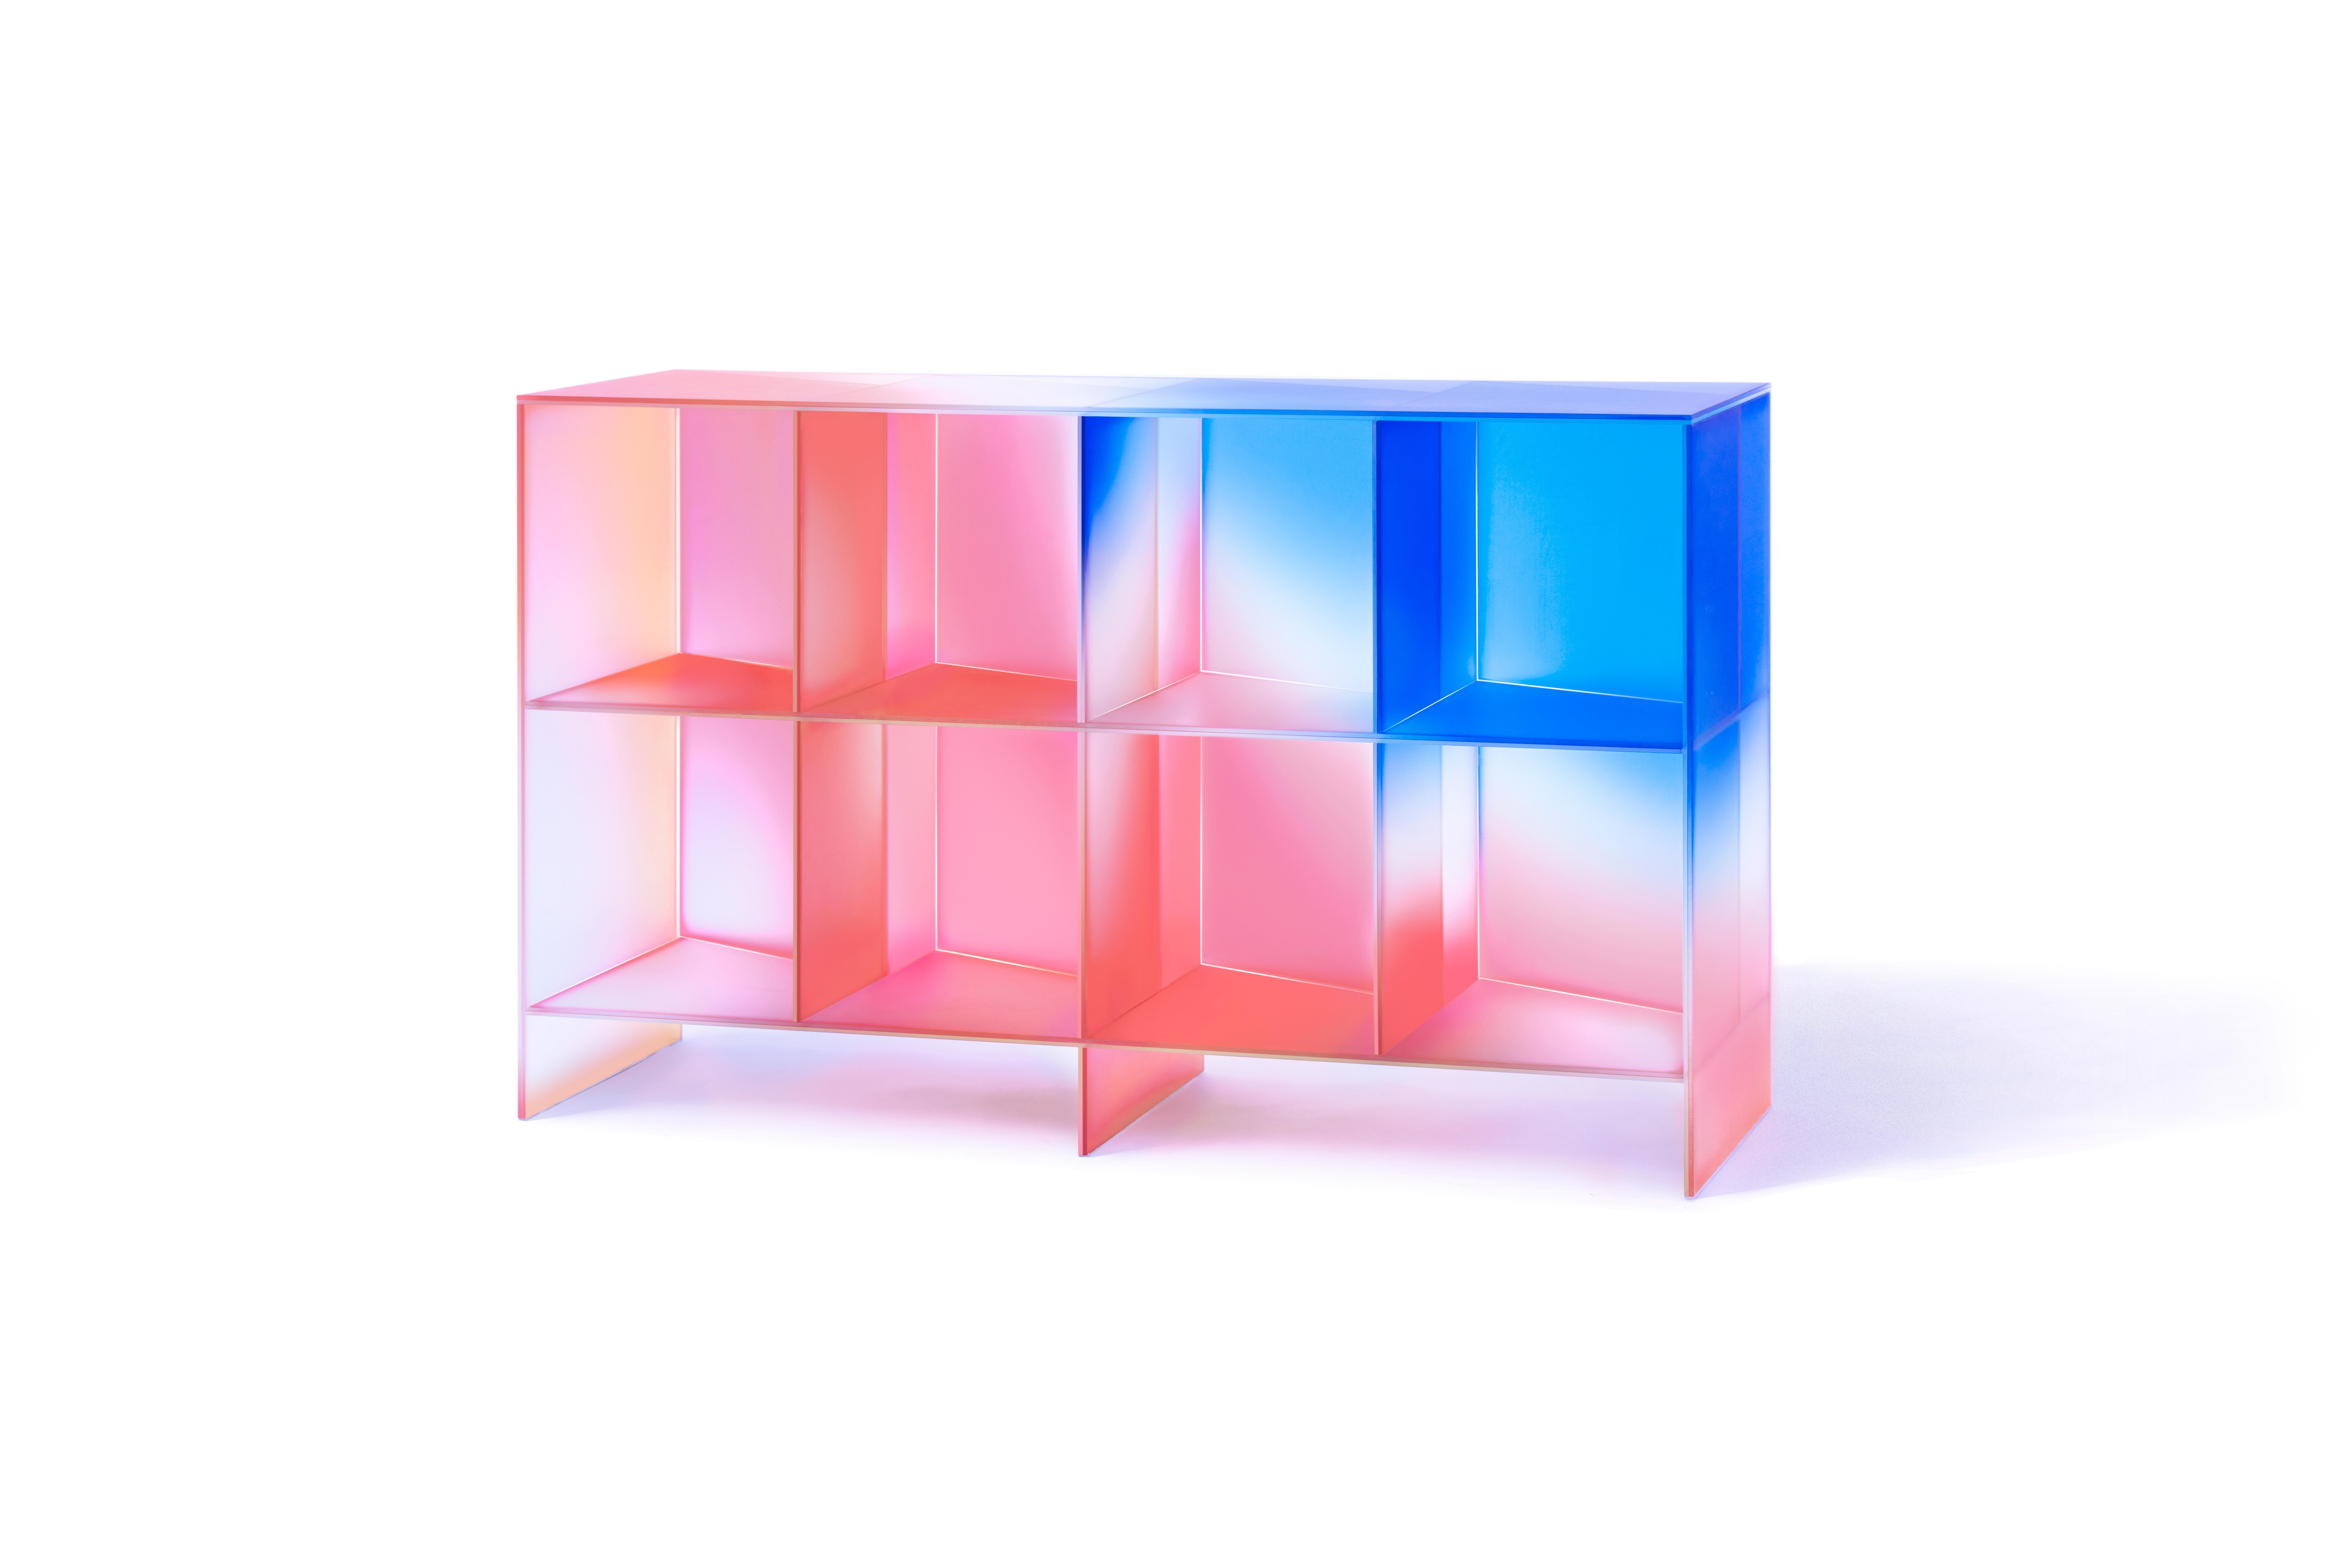 hALO' Kollektion von Buzao - Schrank
Laminiertes dichroitisches Glas, Farbverlauf
Maße: 166 x 40 x H 98 cm

Das Studio Buzao aus Guangzhou (China) erforscht Innovationen im Bereich Möbel- und Beleuchtungsdesign. Von Marmor bis Lavastein, von